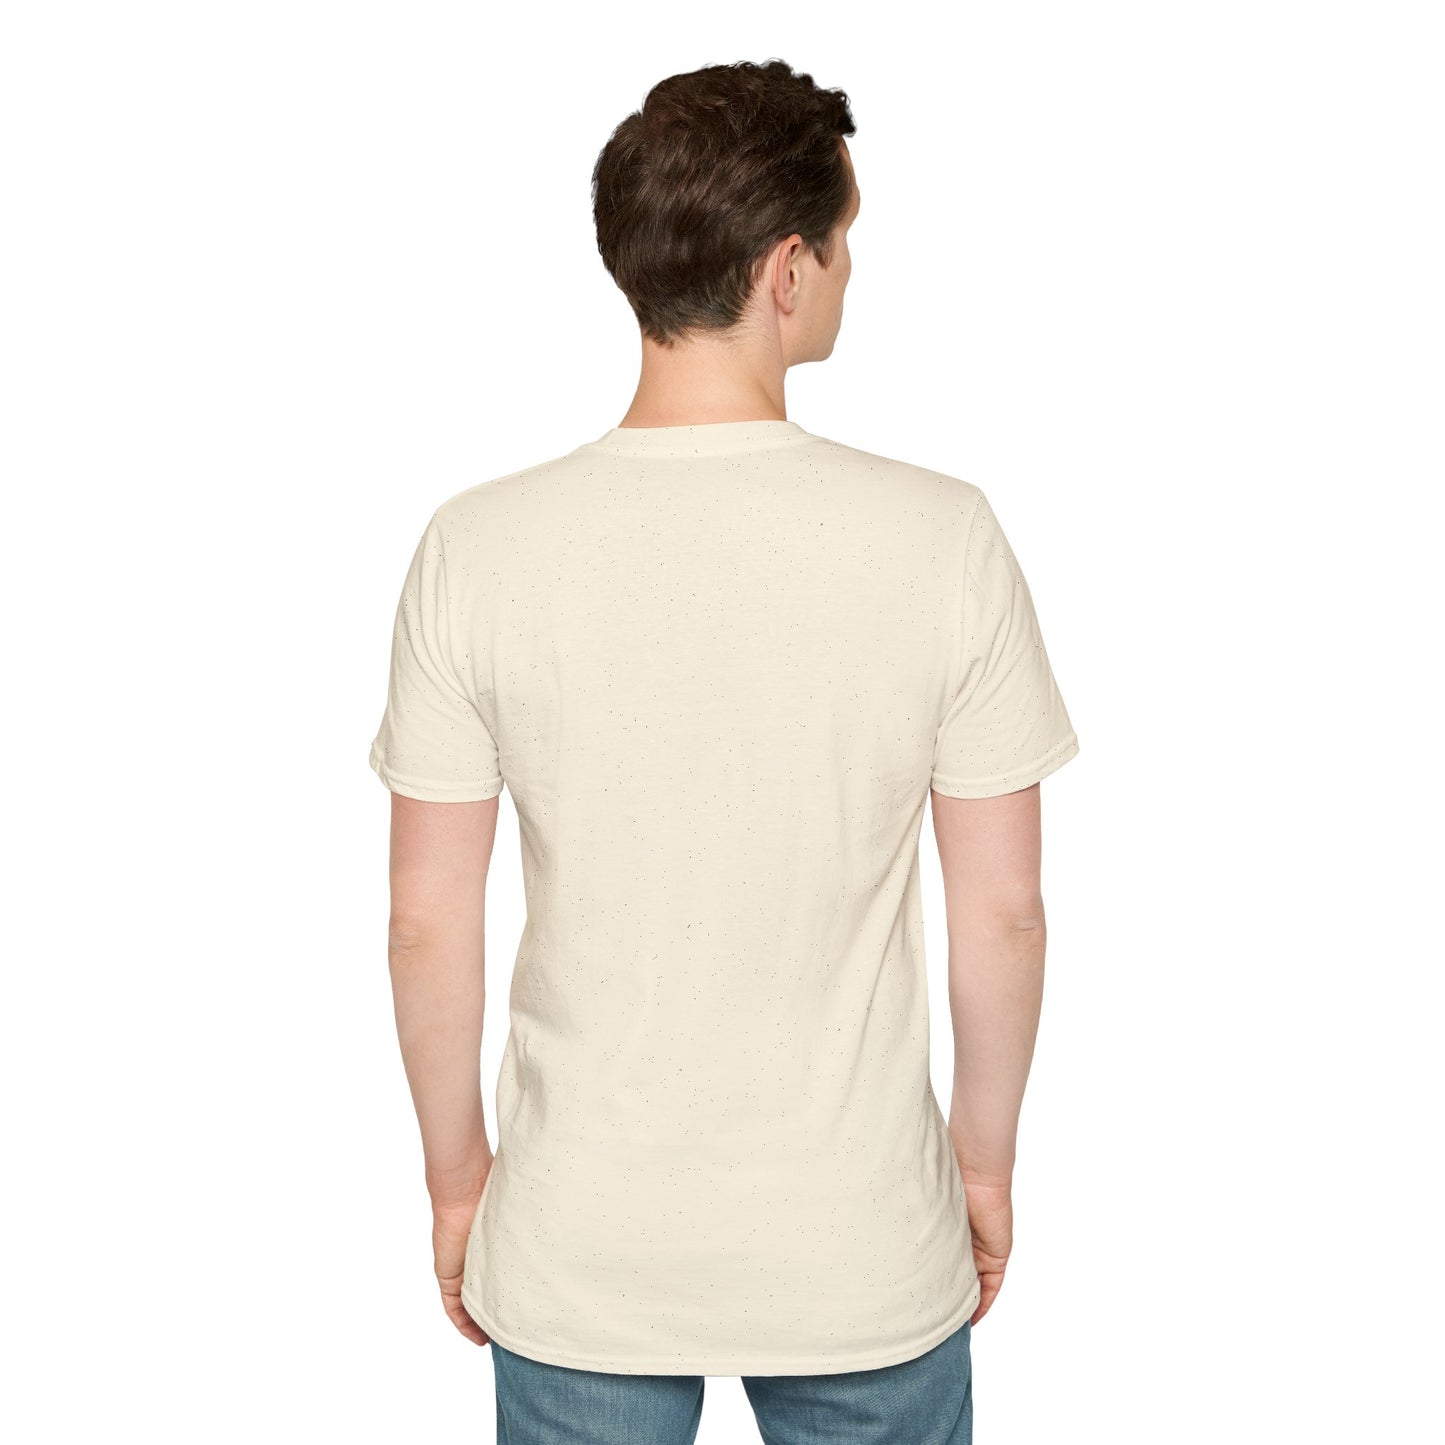 LCAM-9 Unisex Softstyle T-Shirt